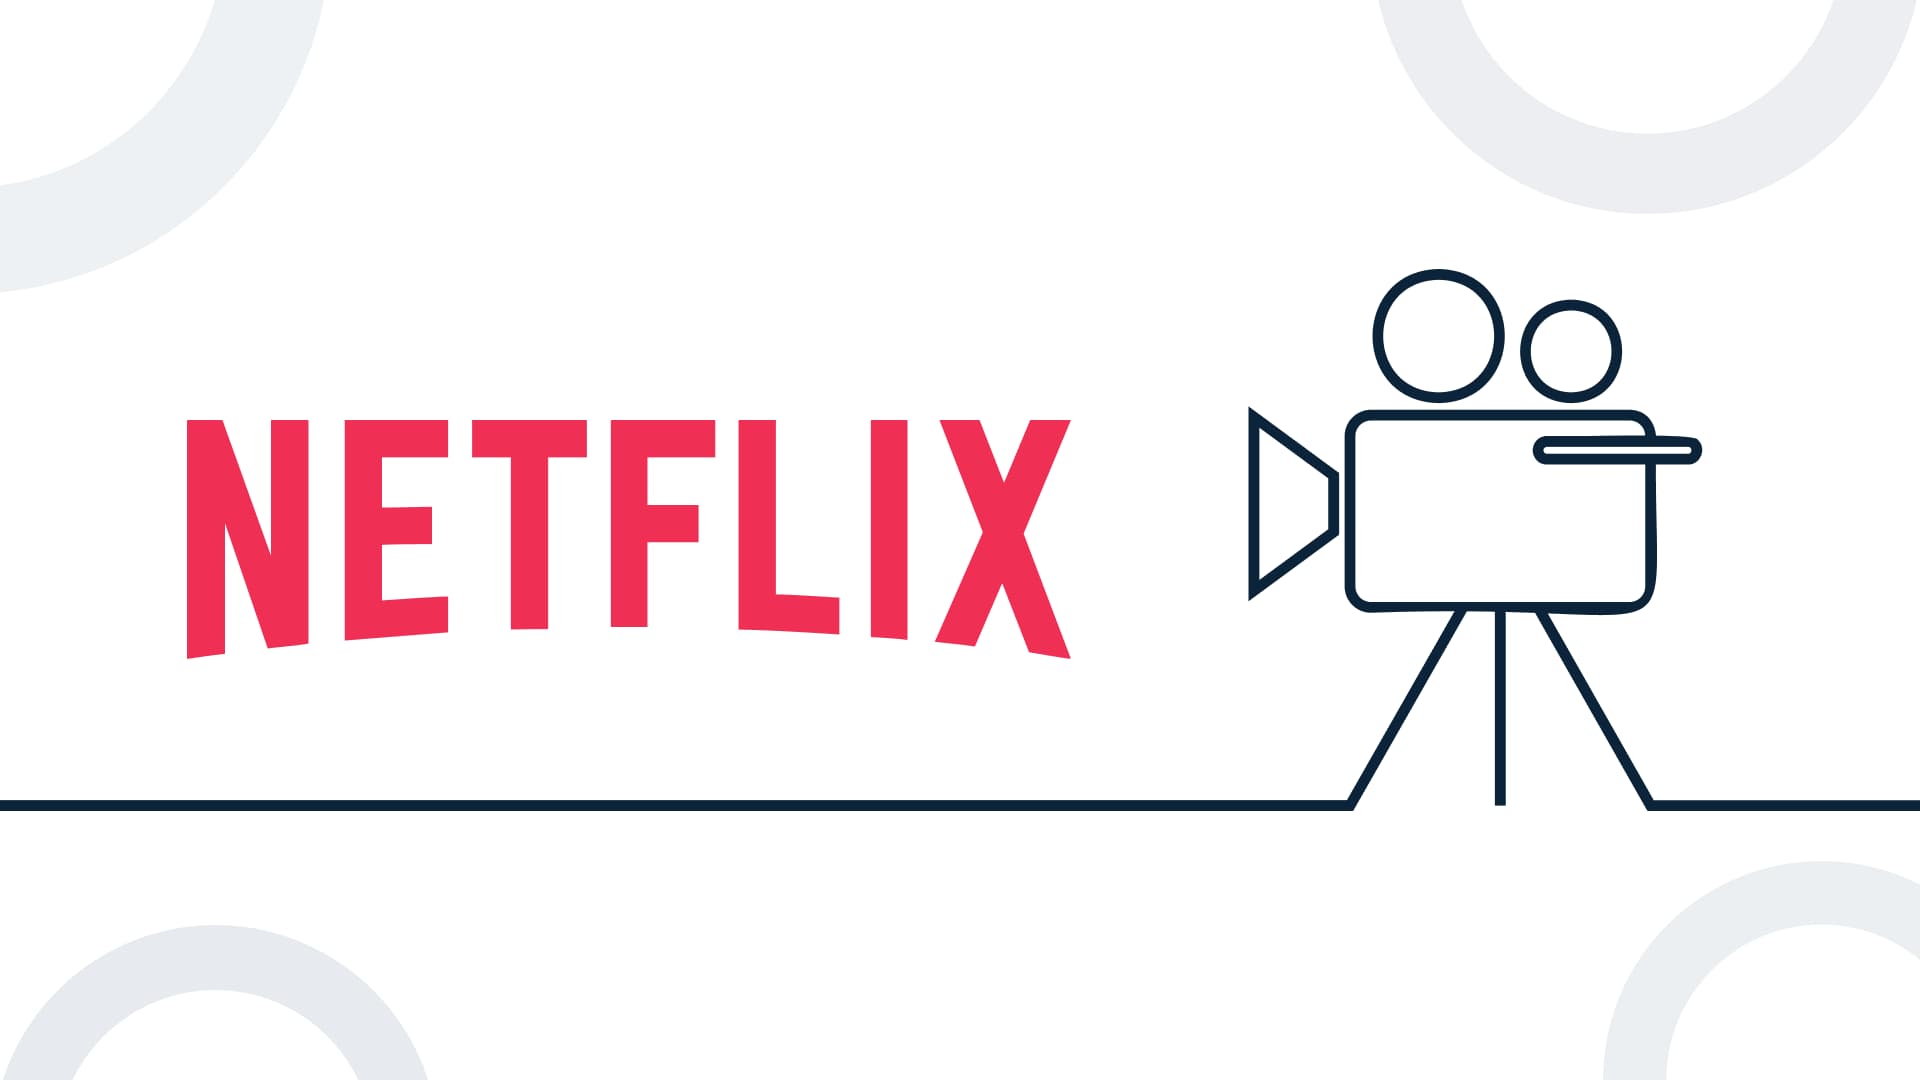 موقع Netflix: استخدام البيانات لتطوير خدمات ومنتجات جديدة مناسبة للمستهلكين حول العالم